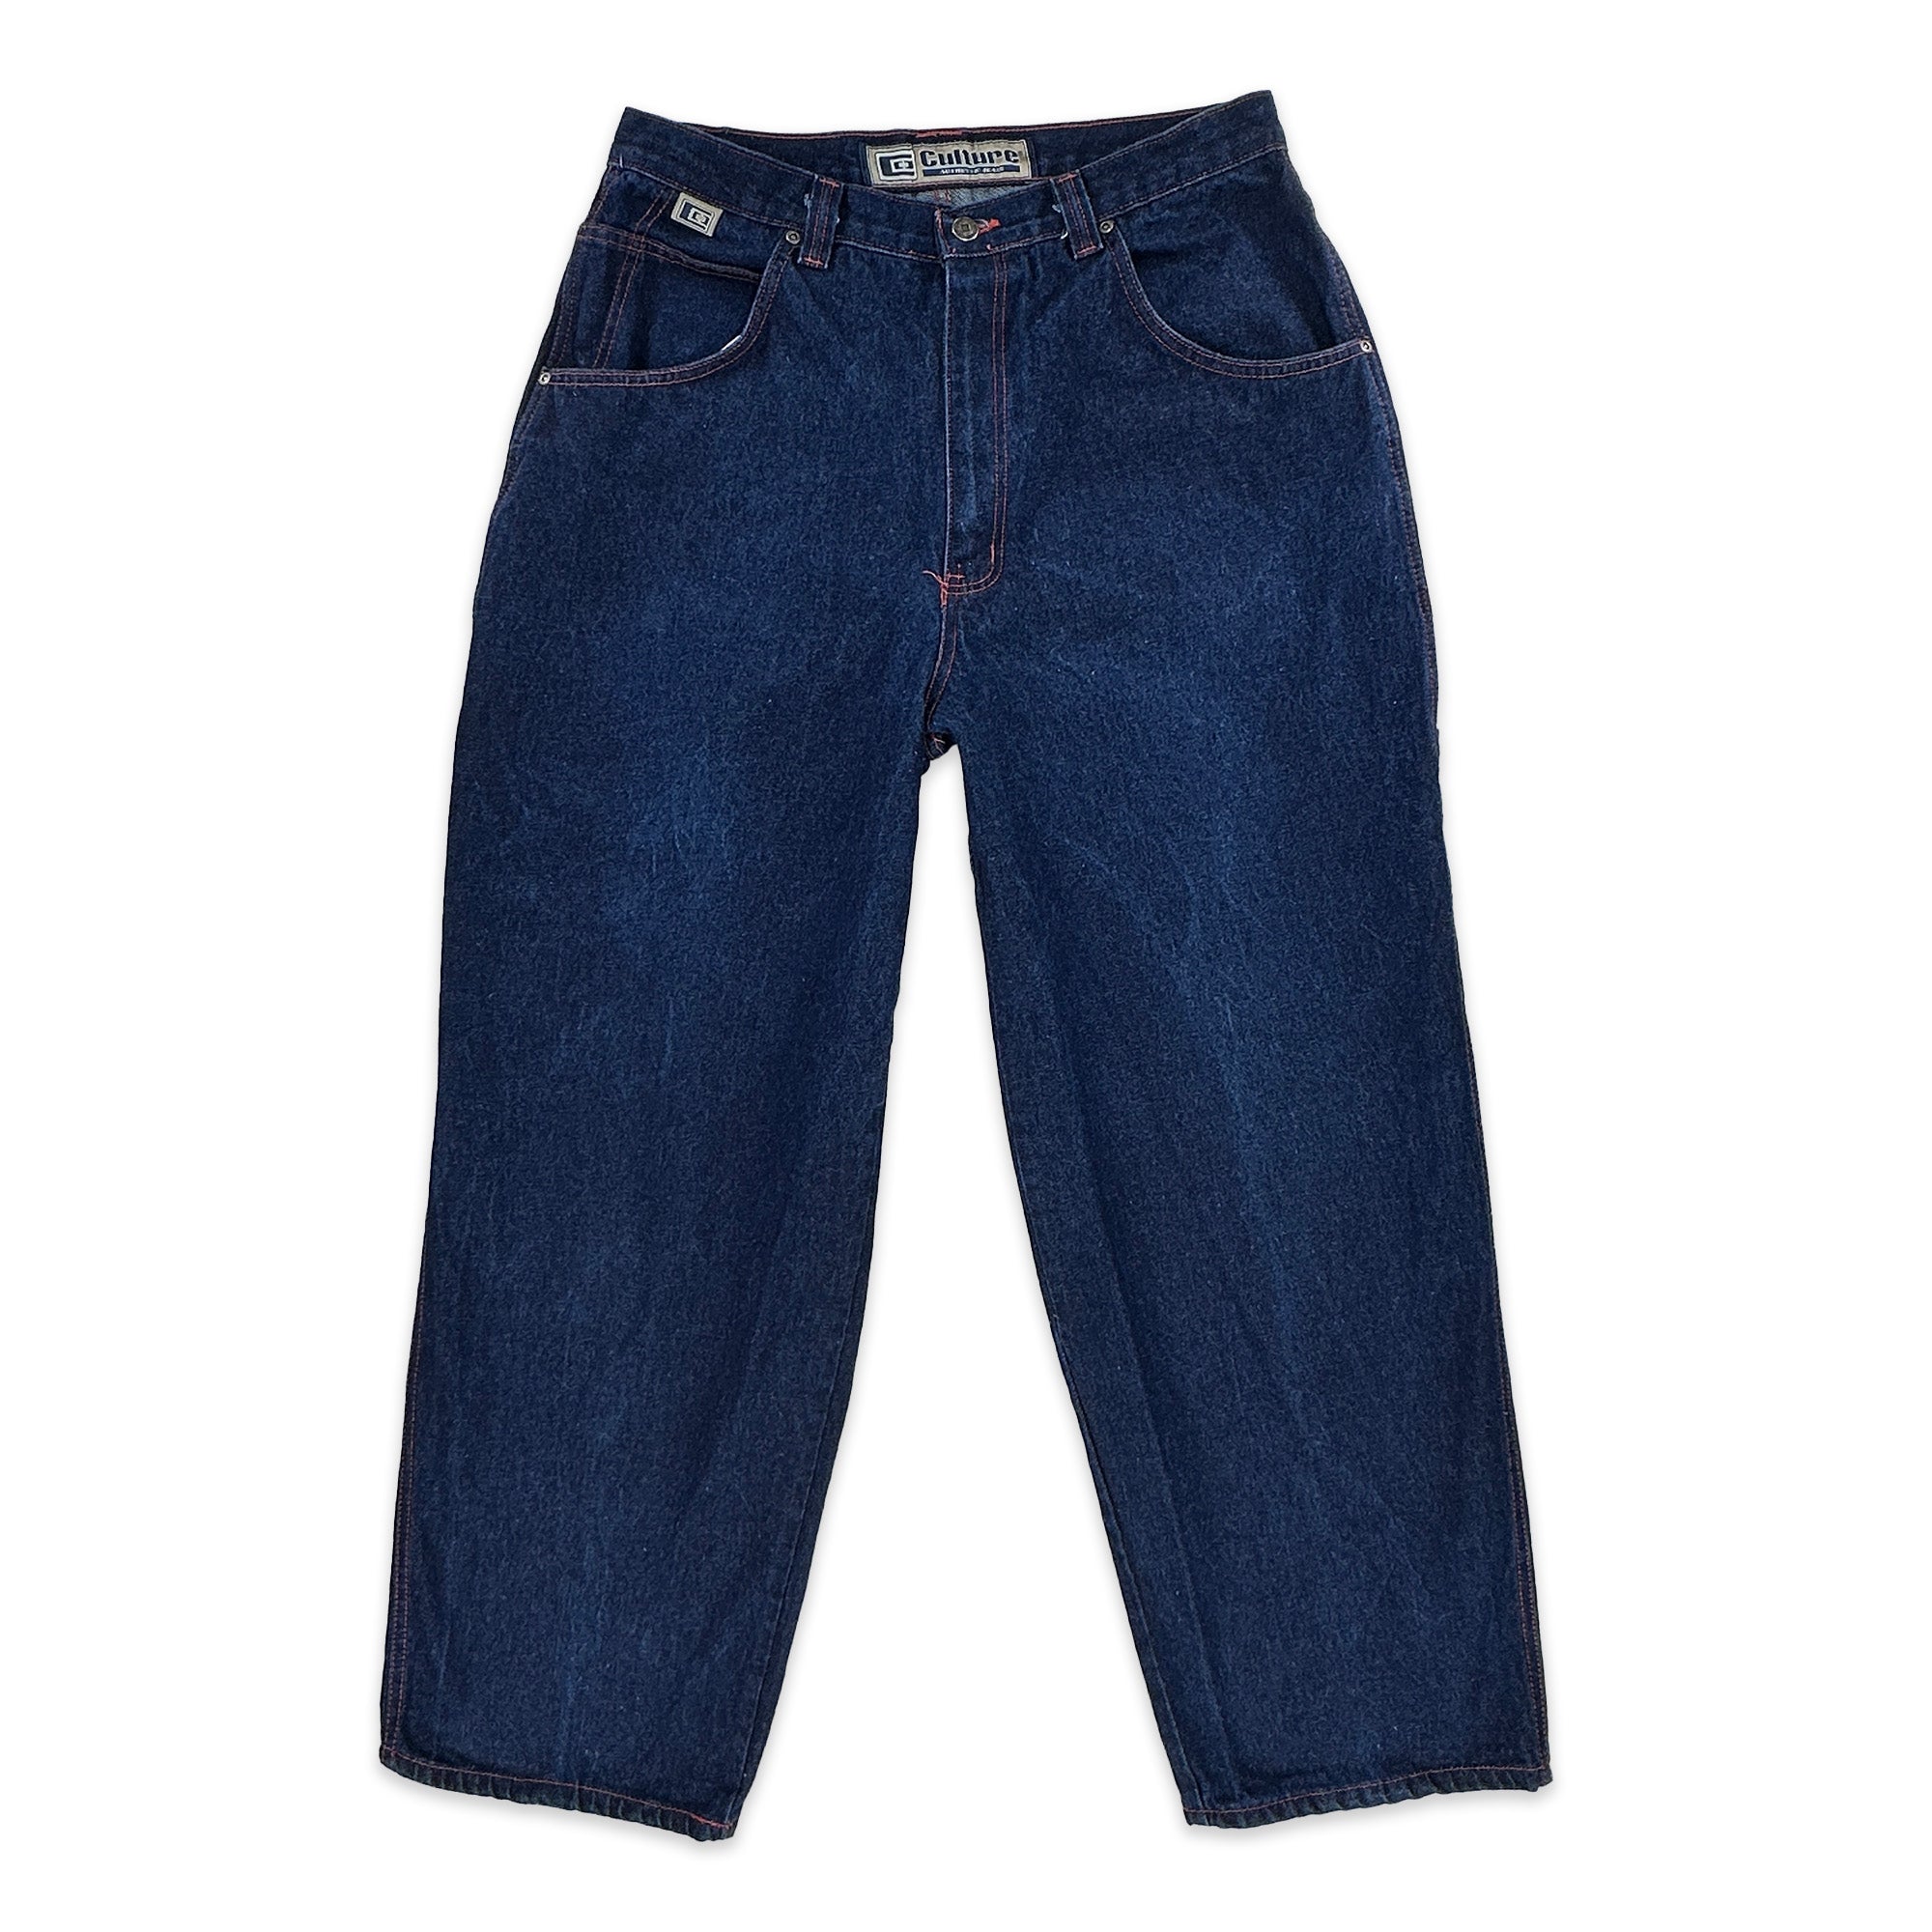 Men's Vintage Blue Wide Leg Baggy Jeans - Measures 34x32